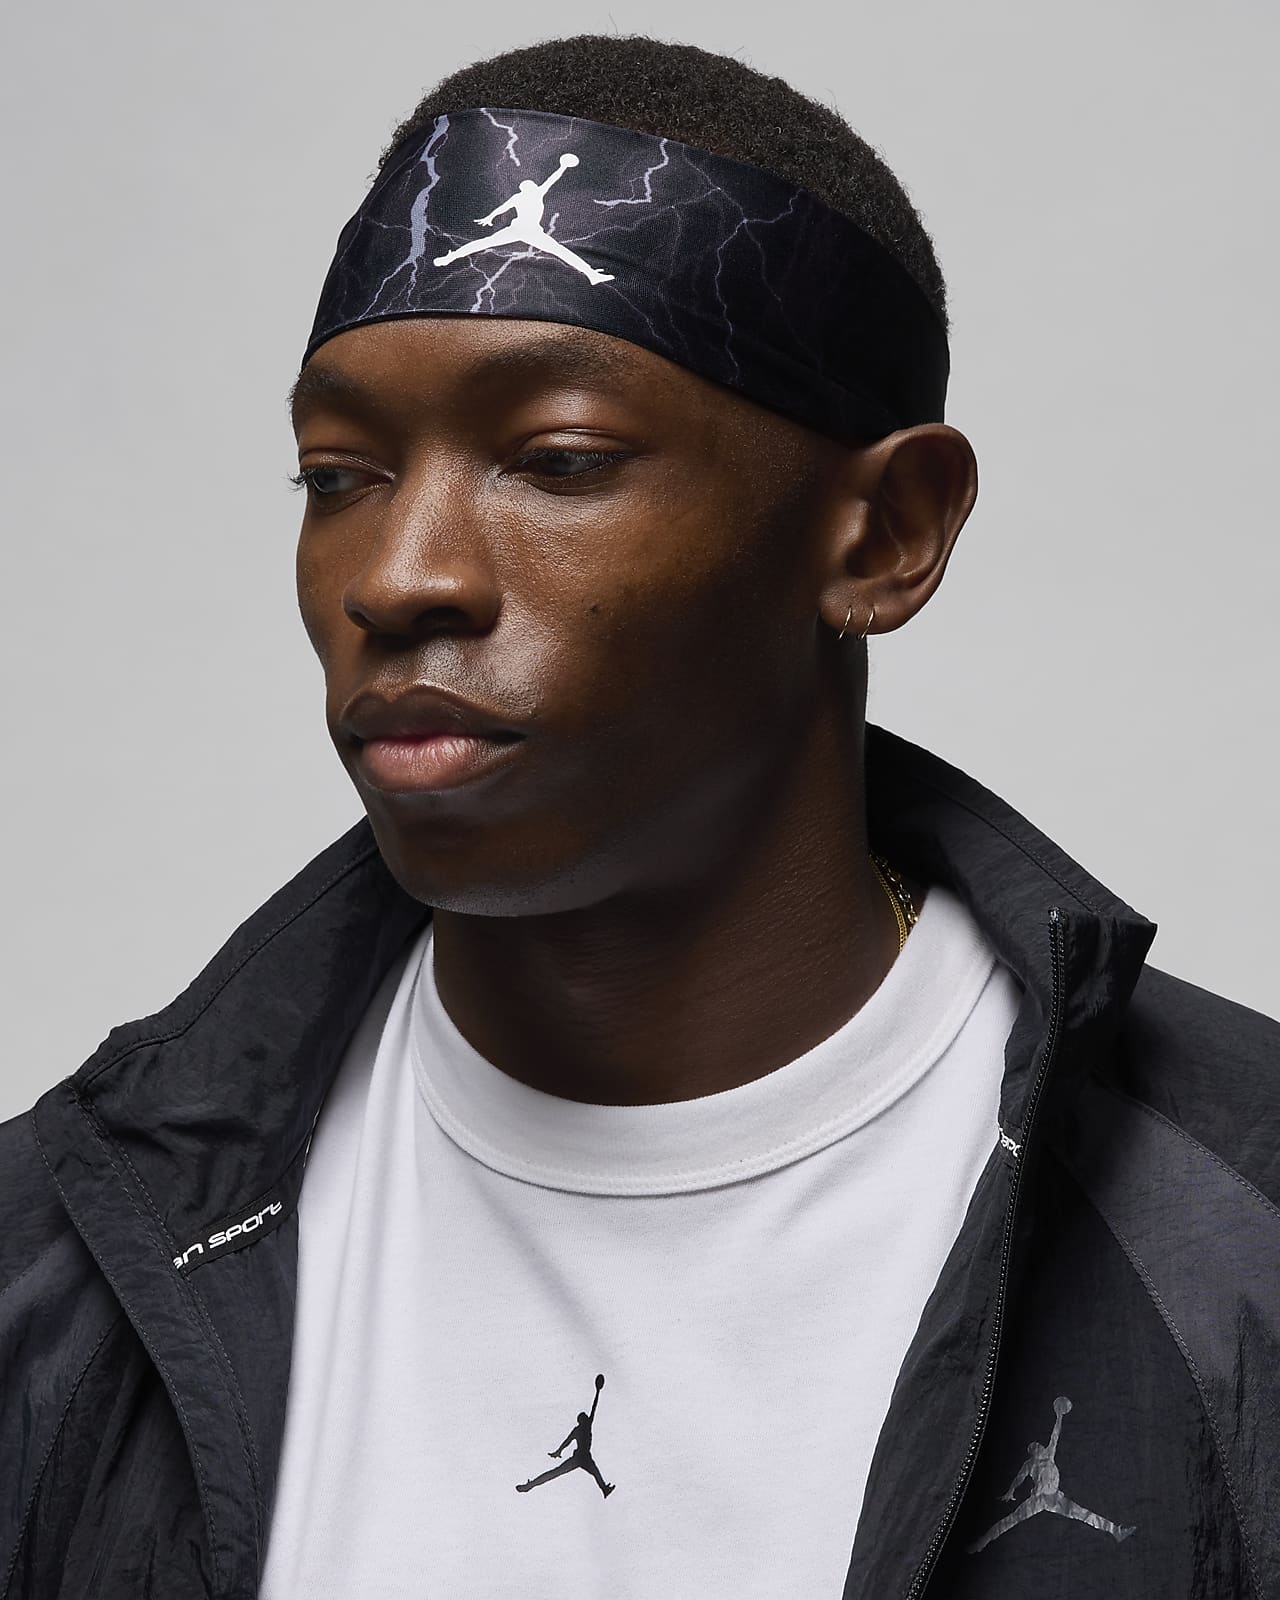 Jordan Fury Printed Headband